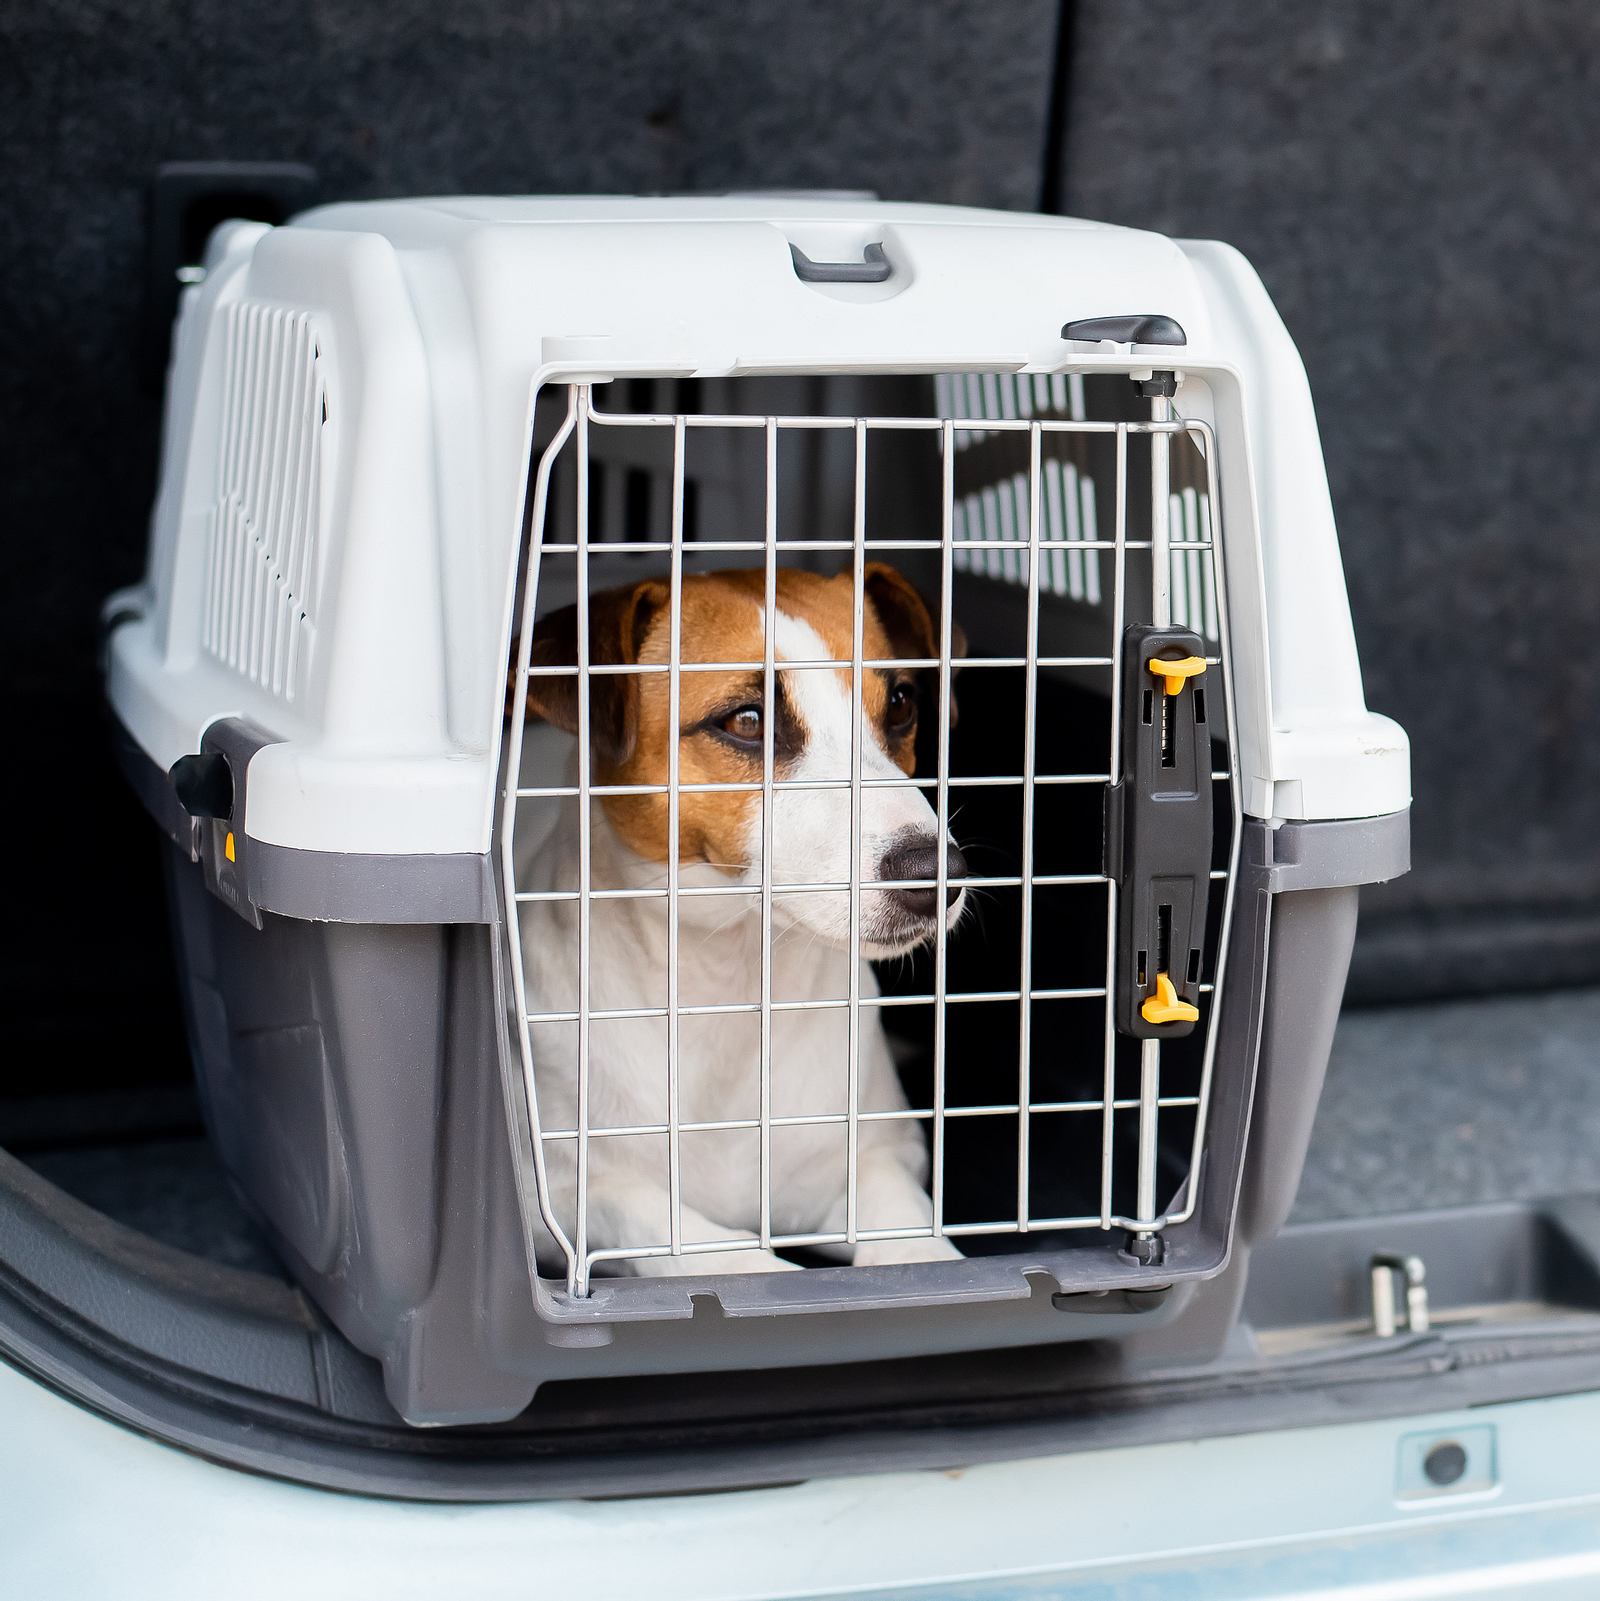 Hundetransportbox - Die sicherste Möglichkeit fürs Auto